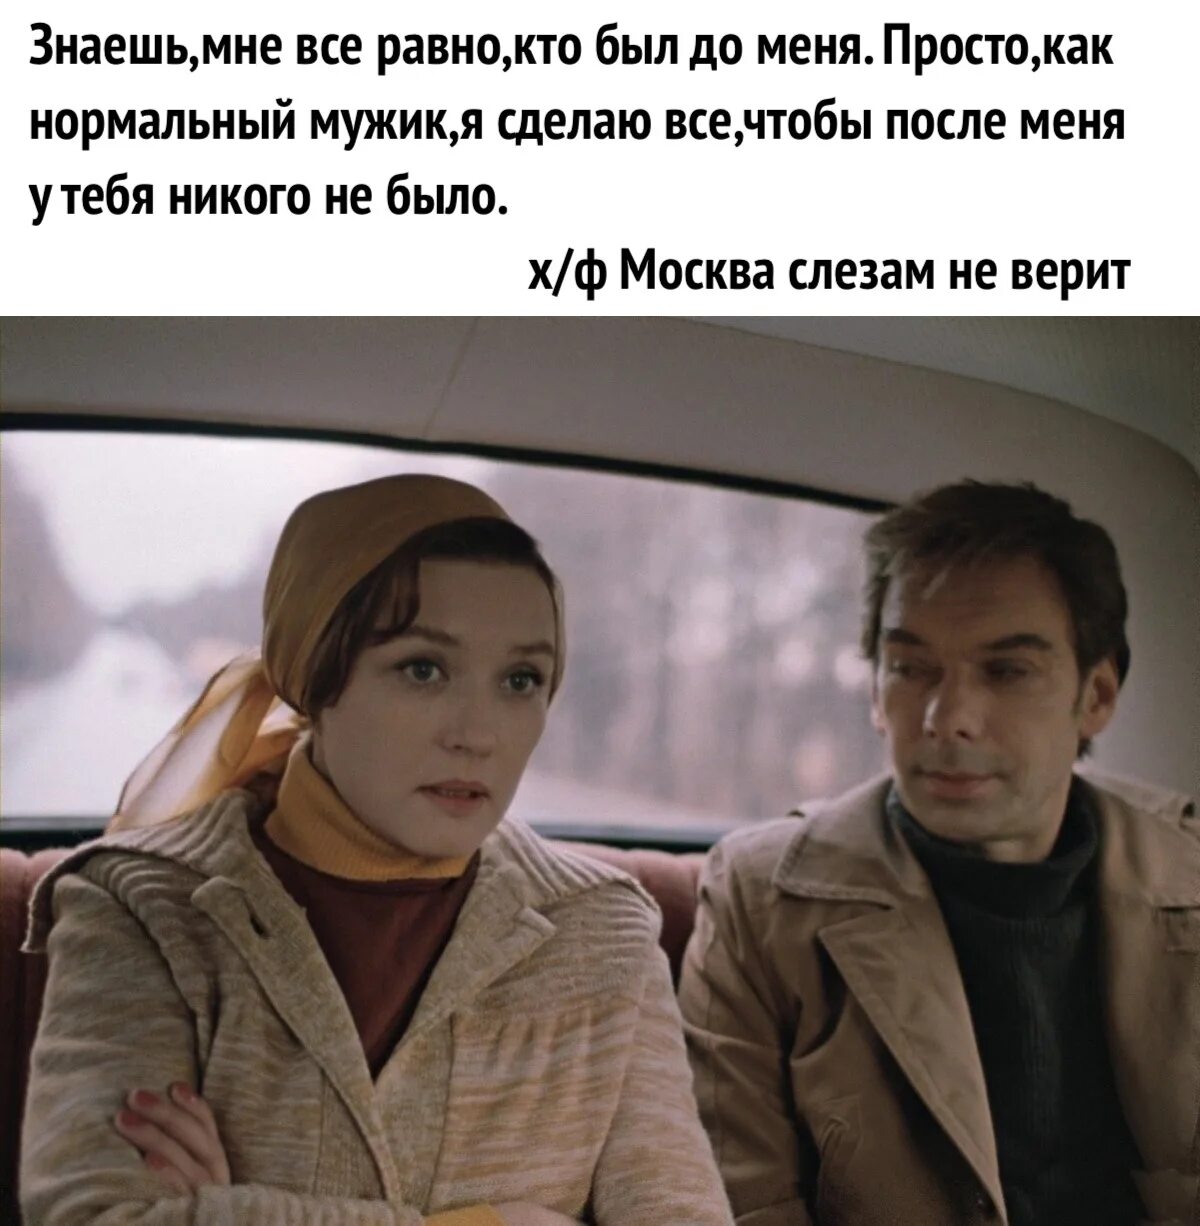 Мой друг также как и я долго. Цитаты из кинофильма Москва слезам не верит. Цитаты из Москва слезам не верит.